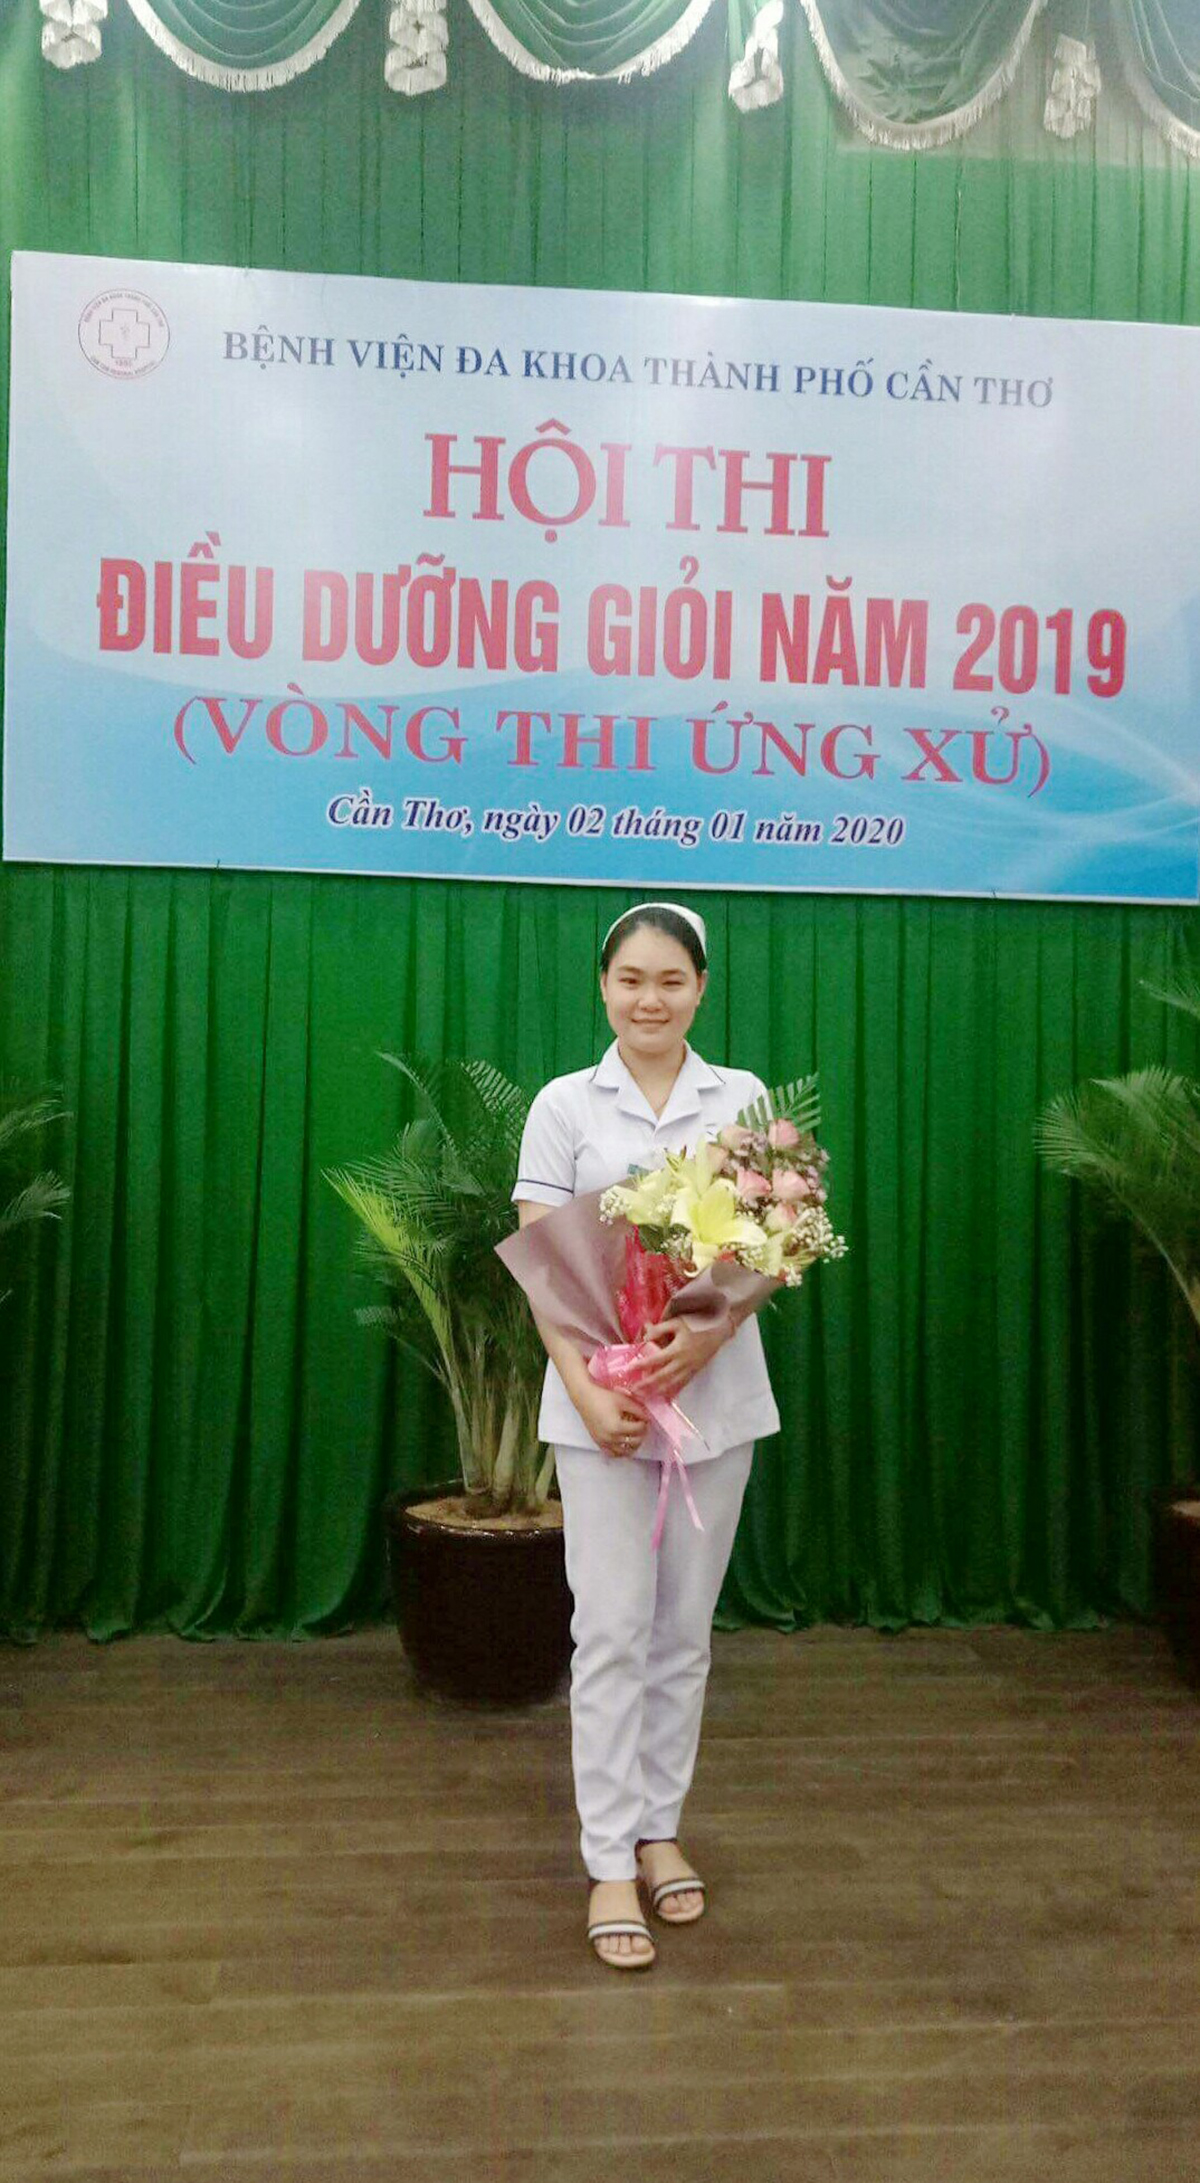 Chị Nguyễn Trần Kim Phụng, cựu SV Trường ĐH Tây Đô, hiện là điều dưỡng viên tại Khoa Hồi sức cấp cứu Bệnh viện đa khoa TP.Cần Thơ - Ảnh: Mỹ Ngọc